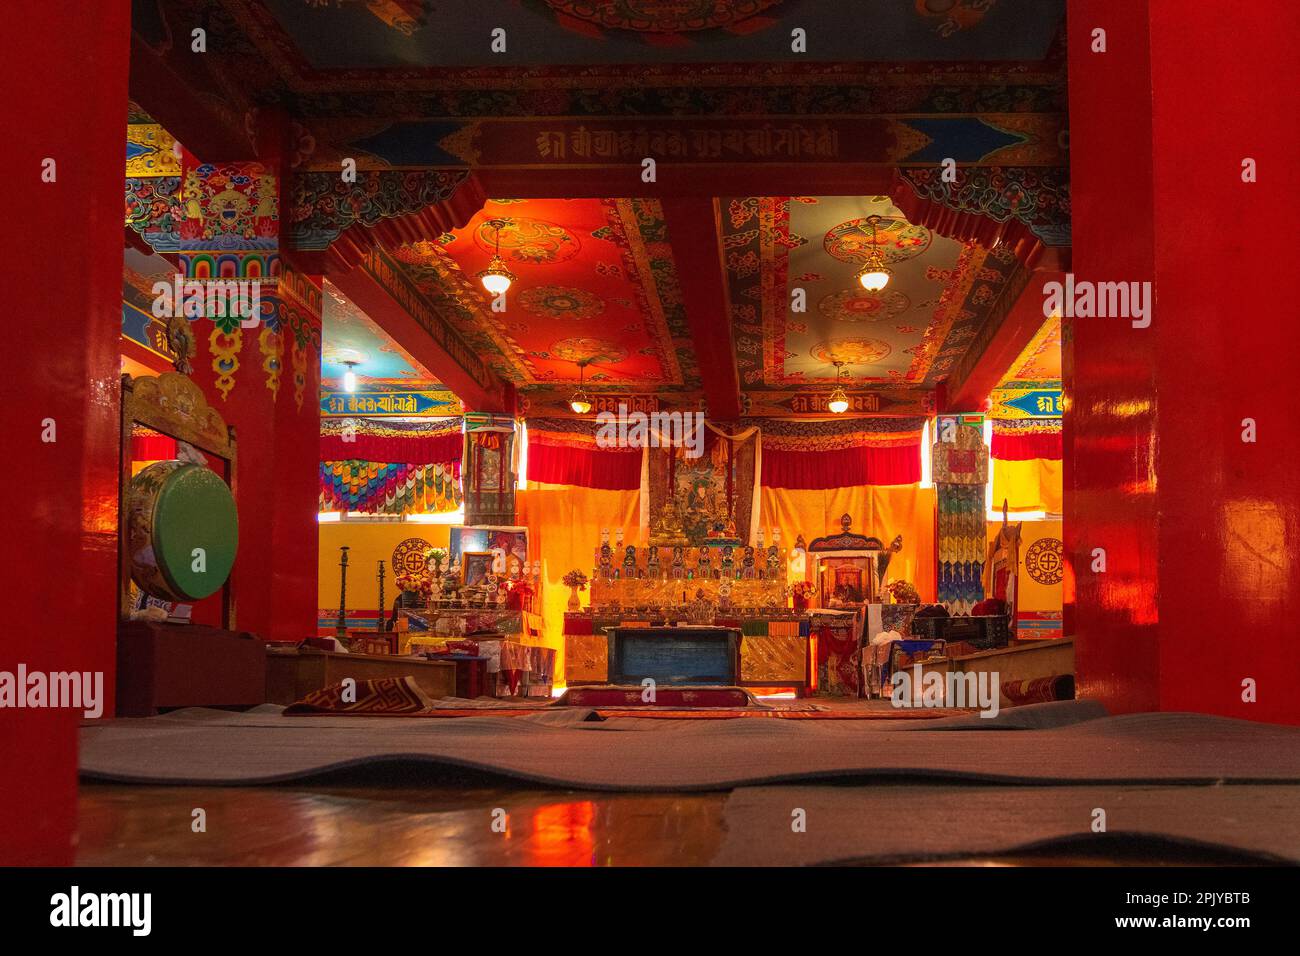 Monastère de Samdruptse, Ravangla, Sikkim, Inde - 20 octobre 2016 : vue intérieure du monastère bouddhiste de Samdruptse, Sikkim, Inde. Banque D'Images